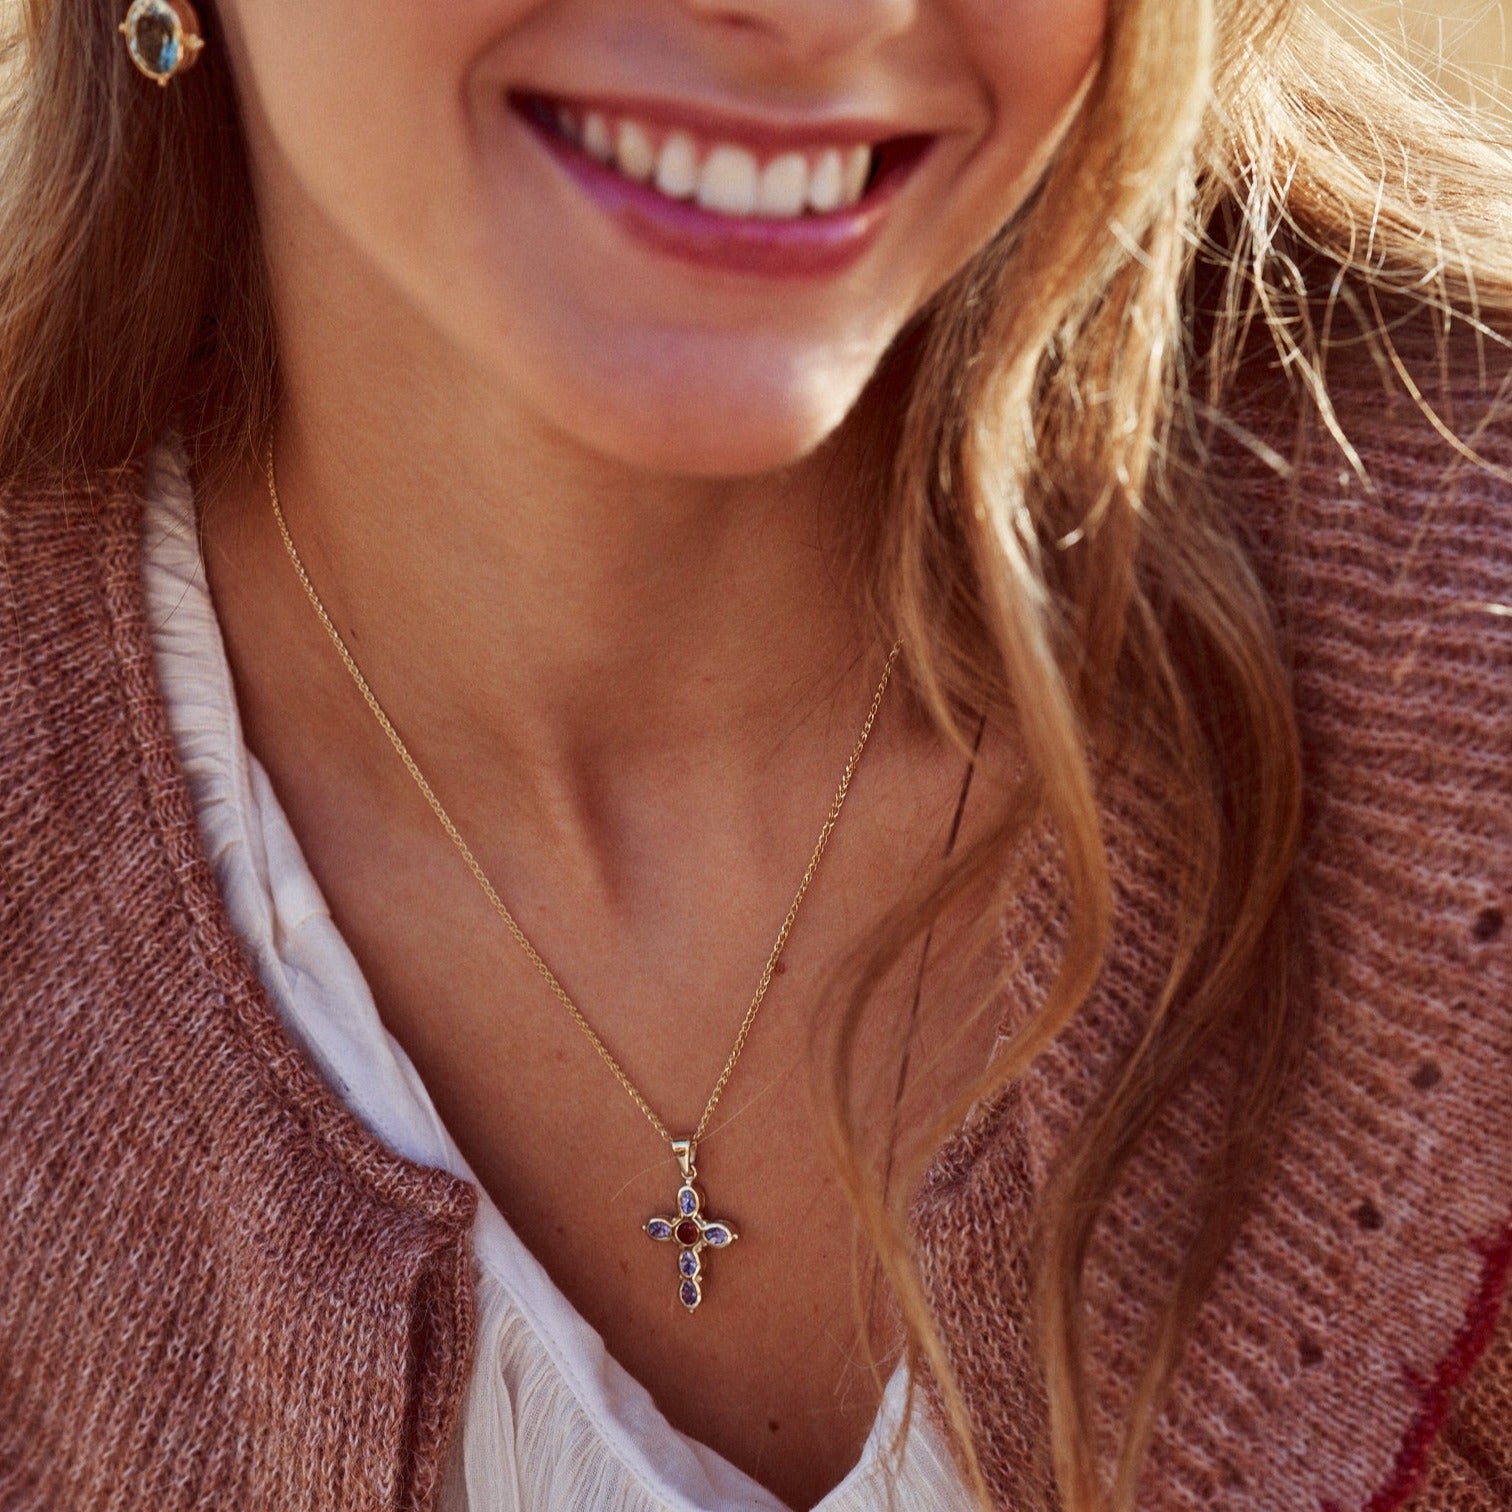 Mujer sonriente con el collar Cruz Martina, fabricado artesanalmente con oro de 9k.